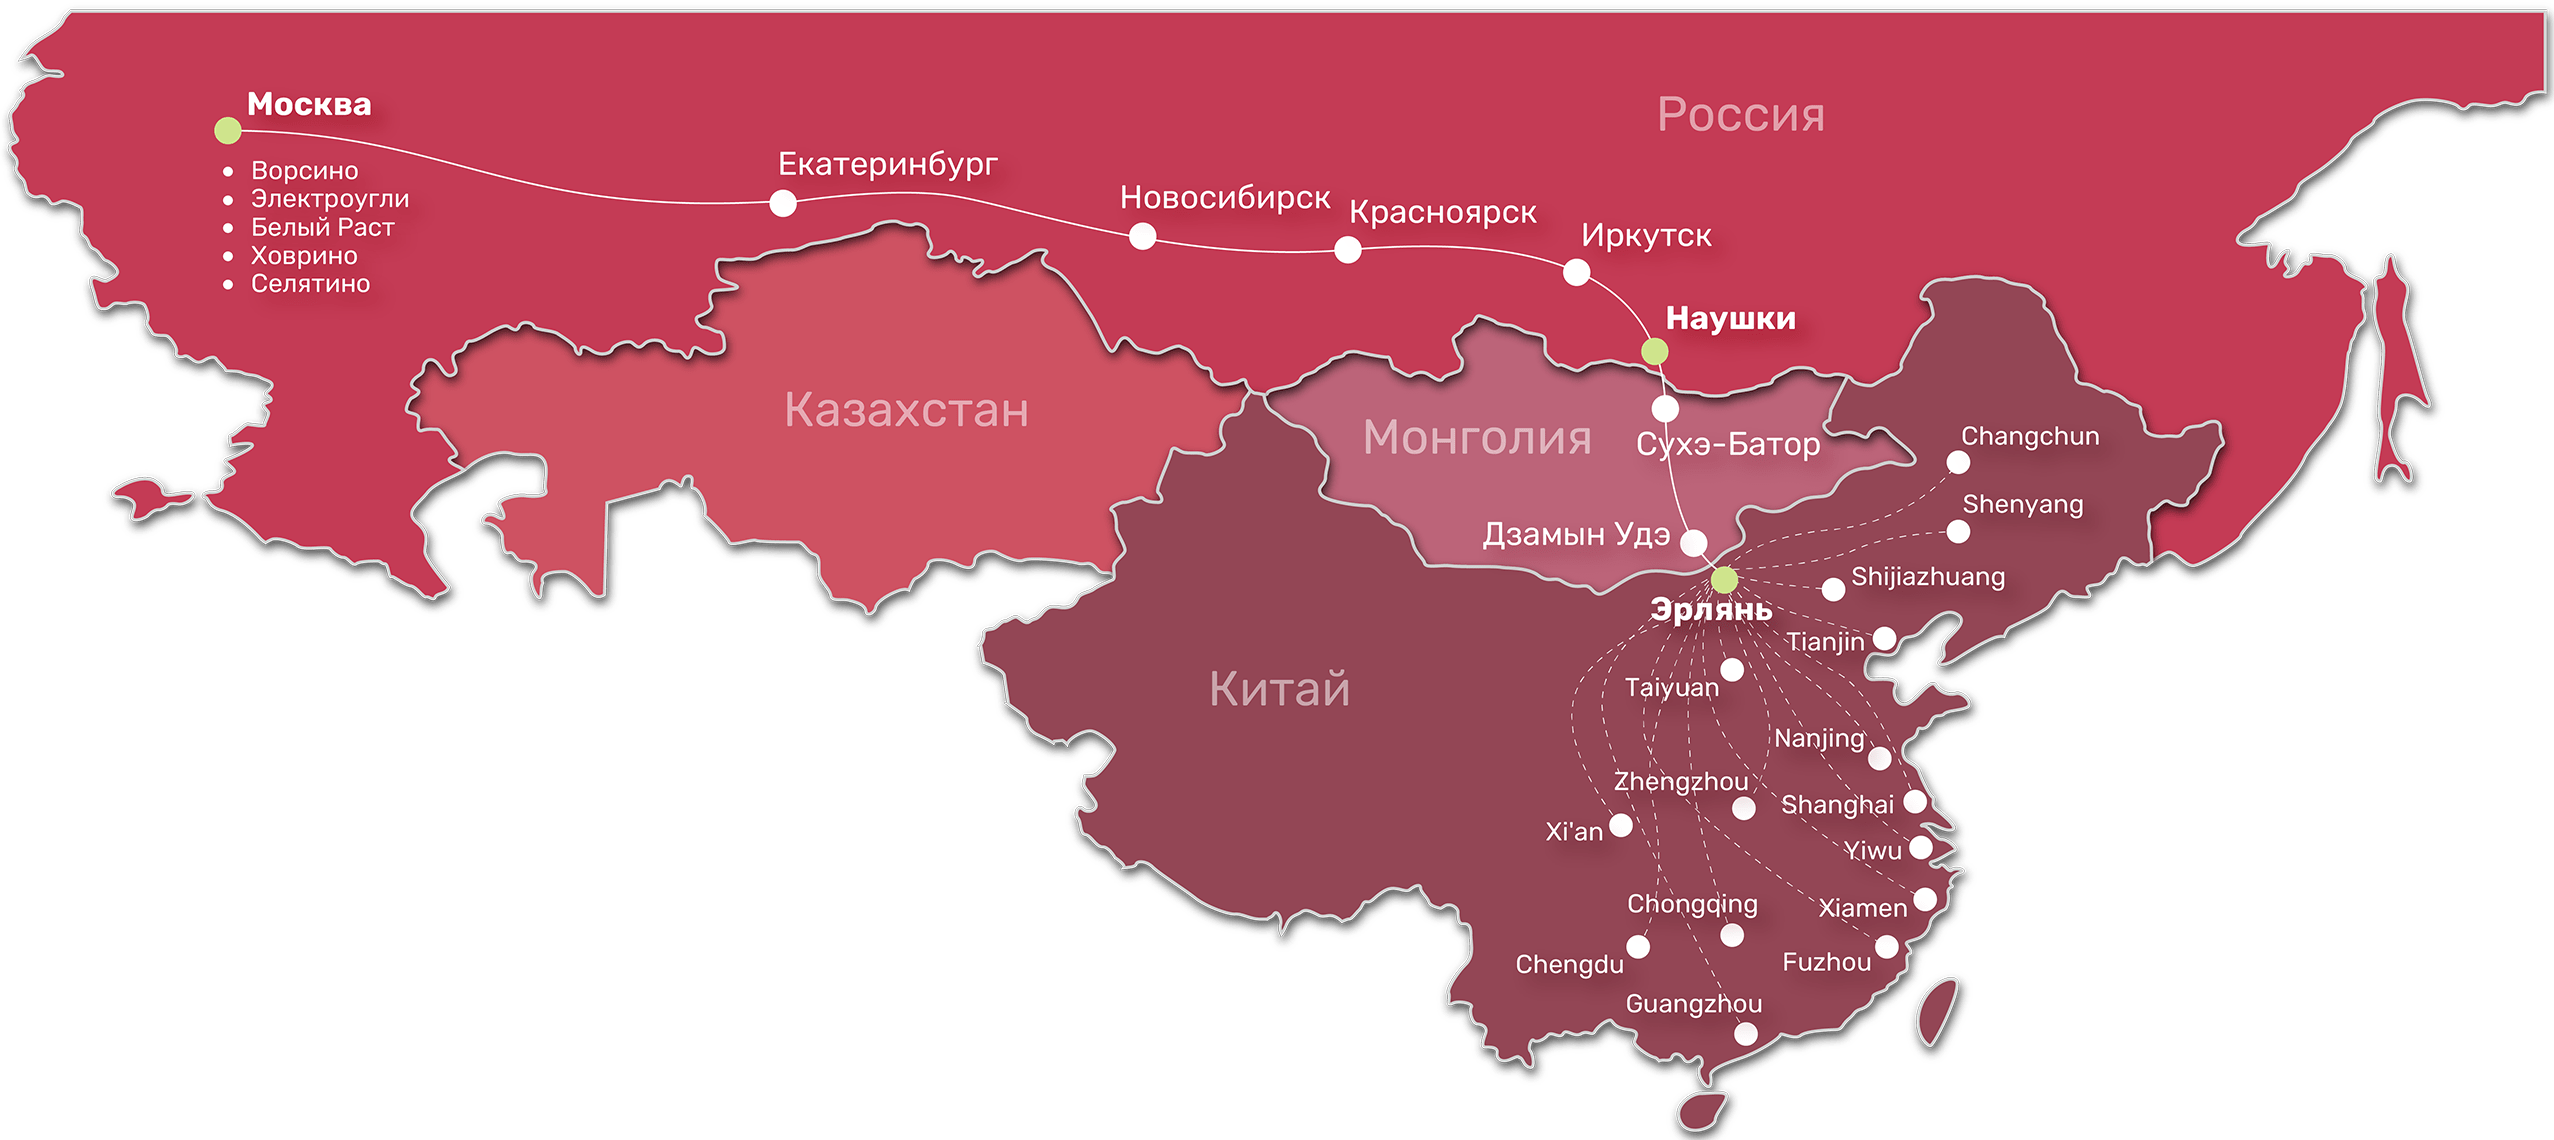 Маршрут жд доставки грузов в Россию через Монголию